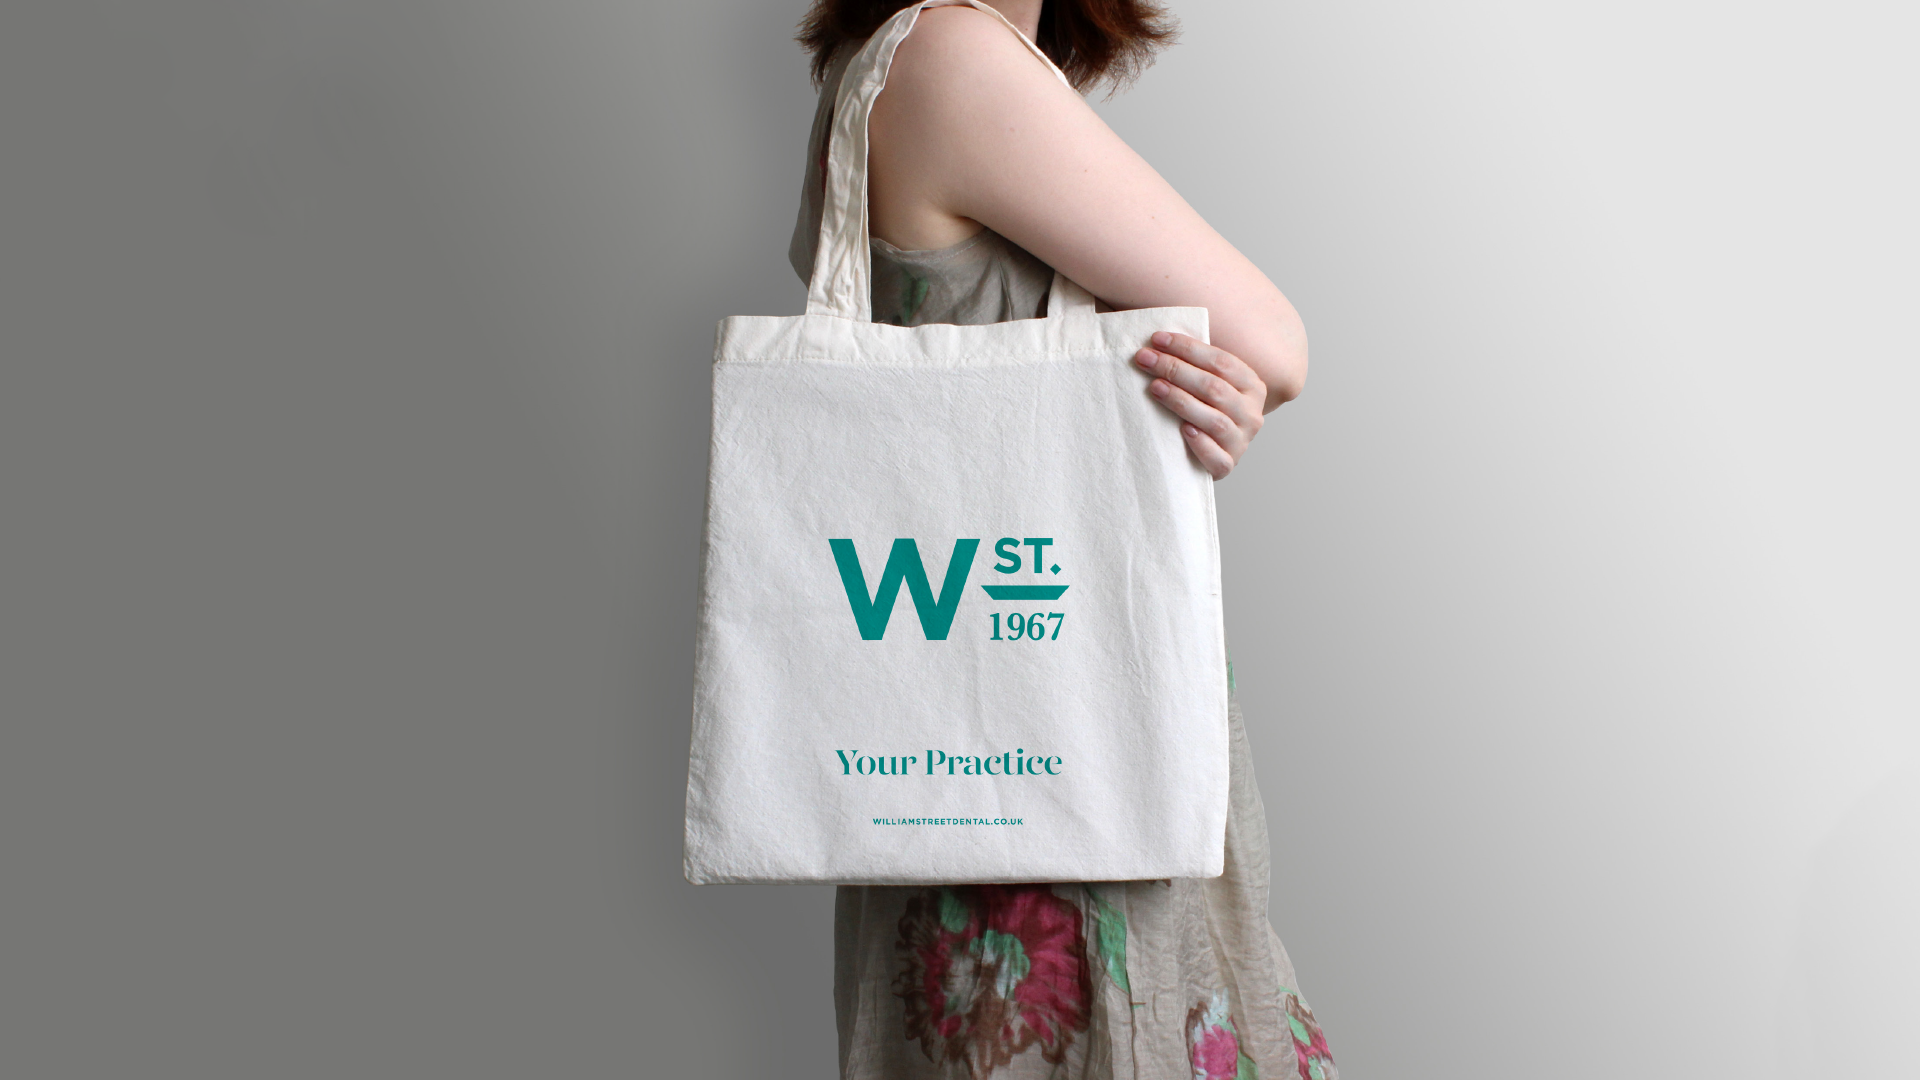 Dental bradned promotional shopping bag by 